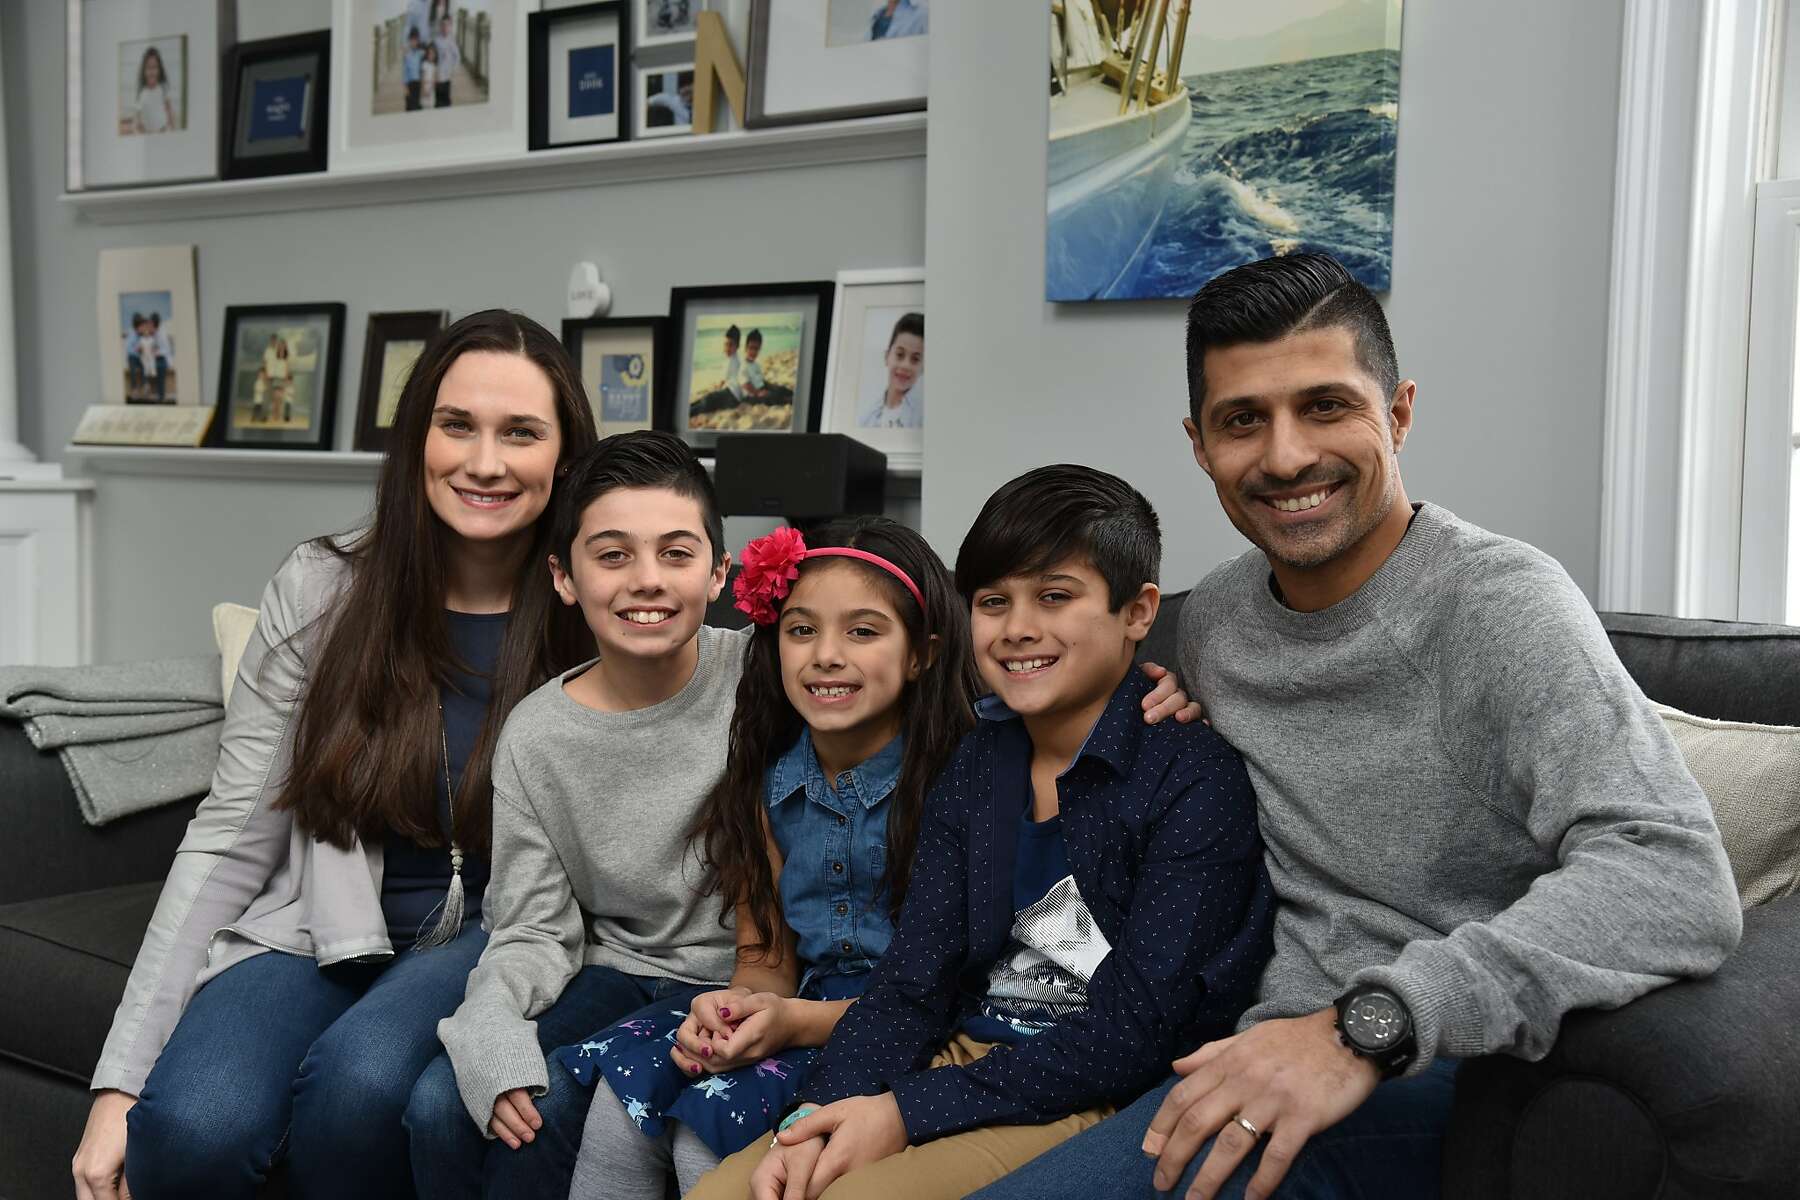 Shelton Family Appears On 'Shark Tank'